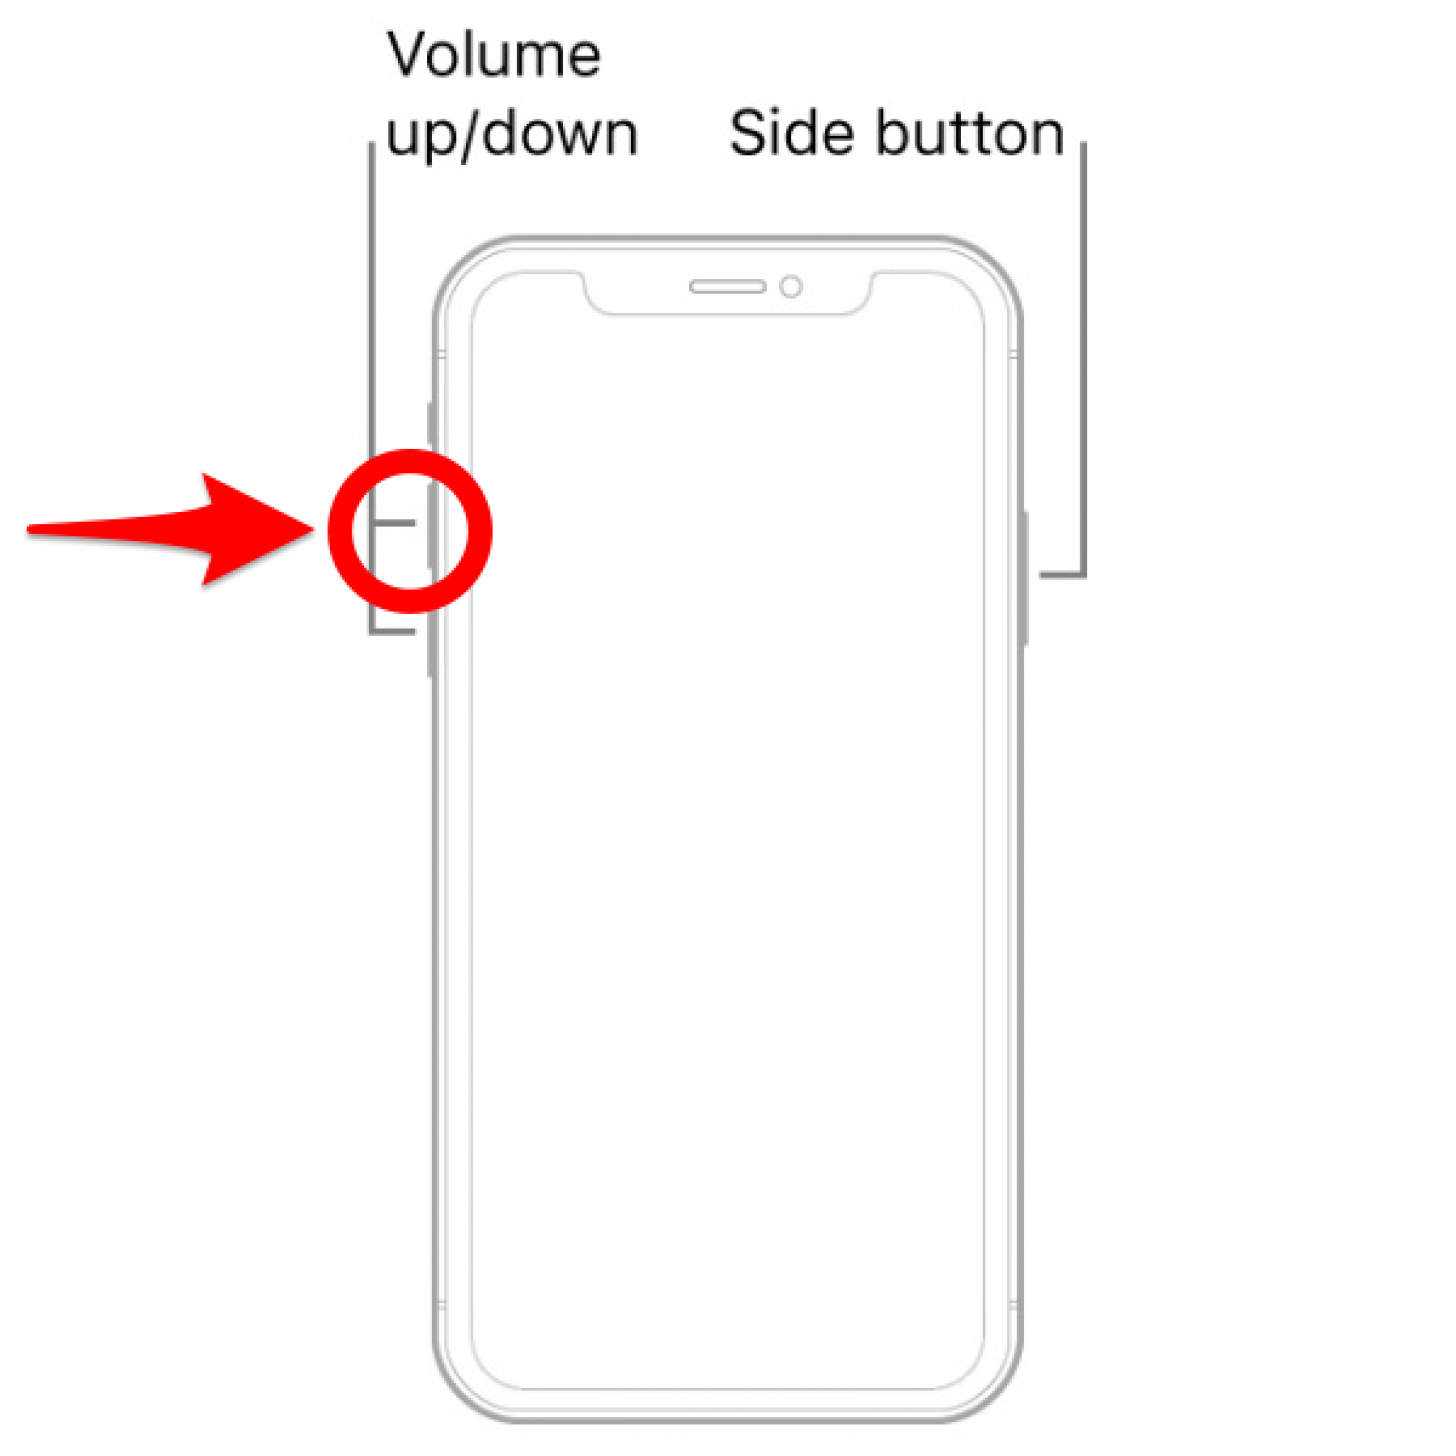 Presione el botón para subir el volumen y suéltelo rápidamente: reinicie el iPhone x